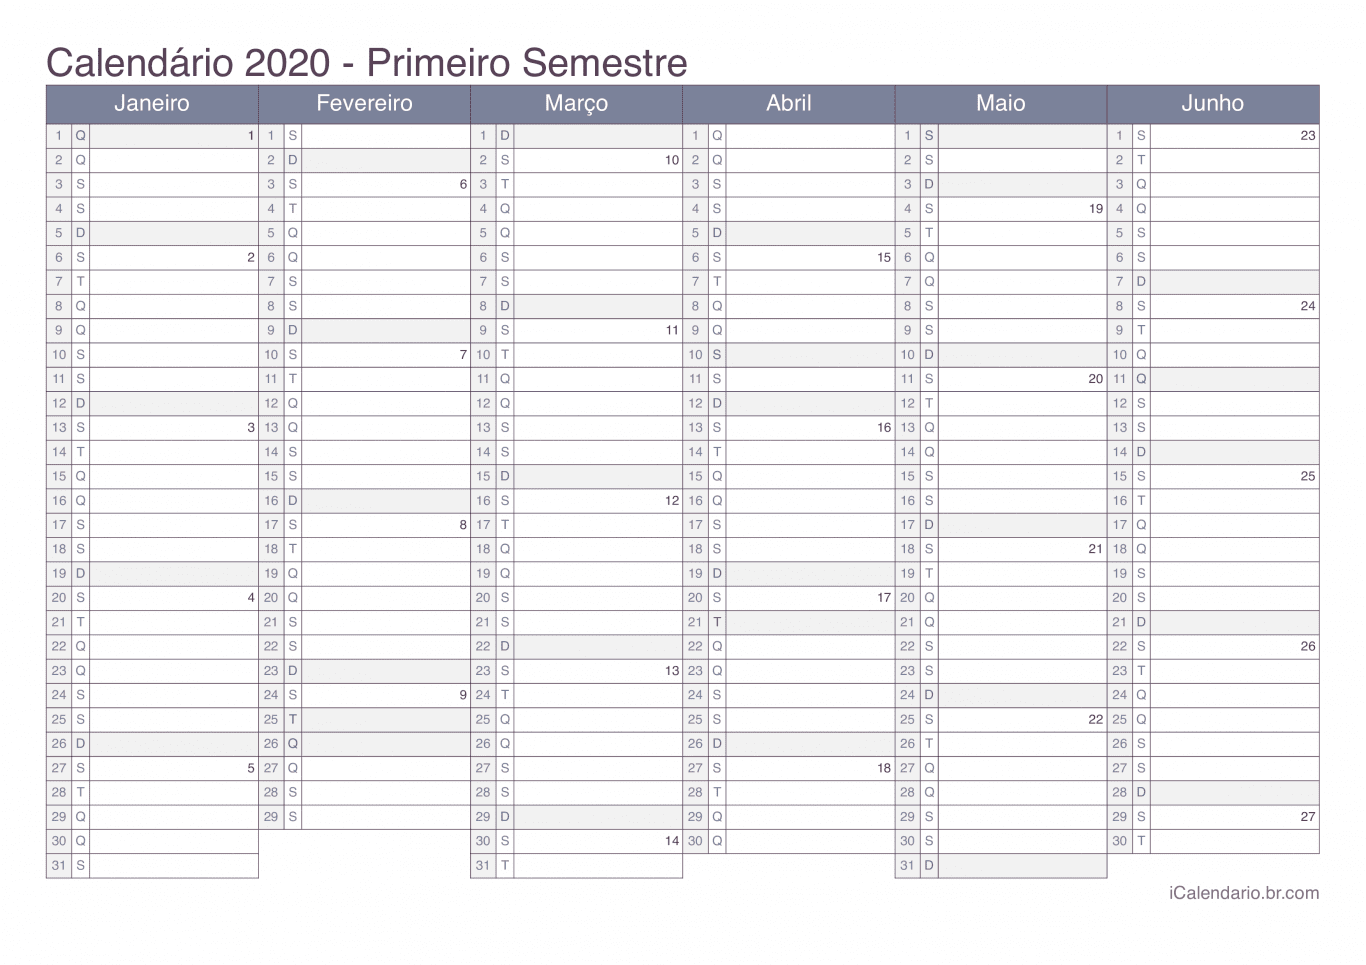 Calendário por semestre com números da semana 2020 - Office